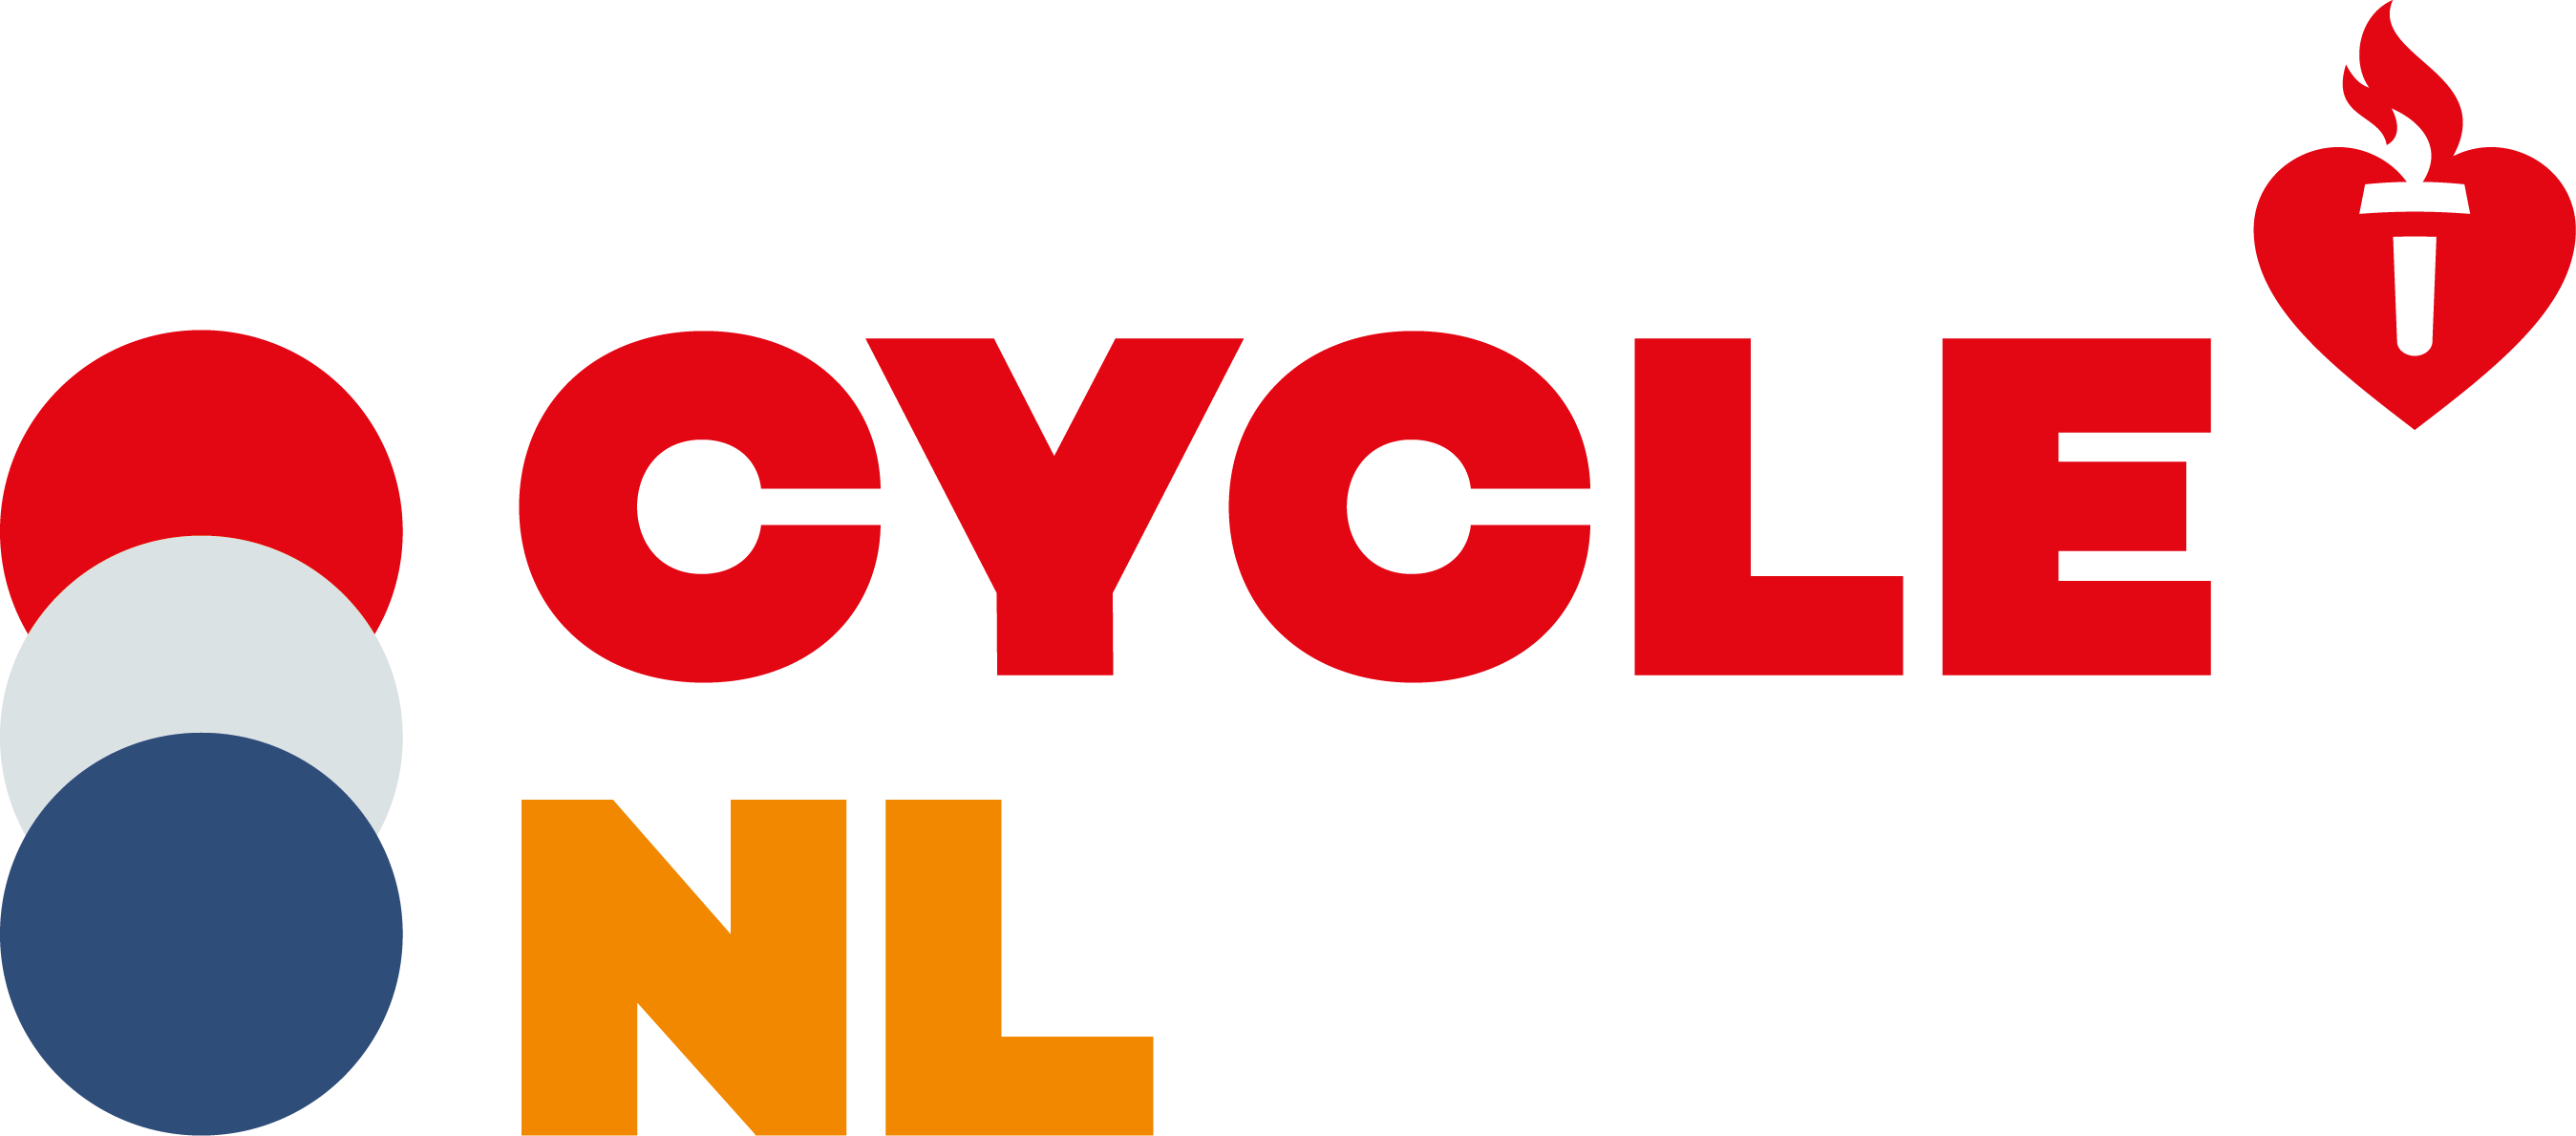 Cycle nl